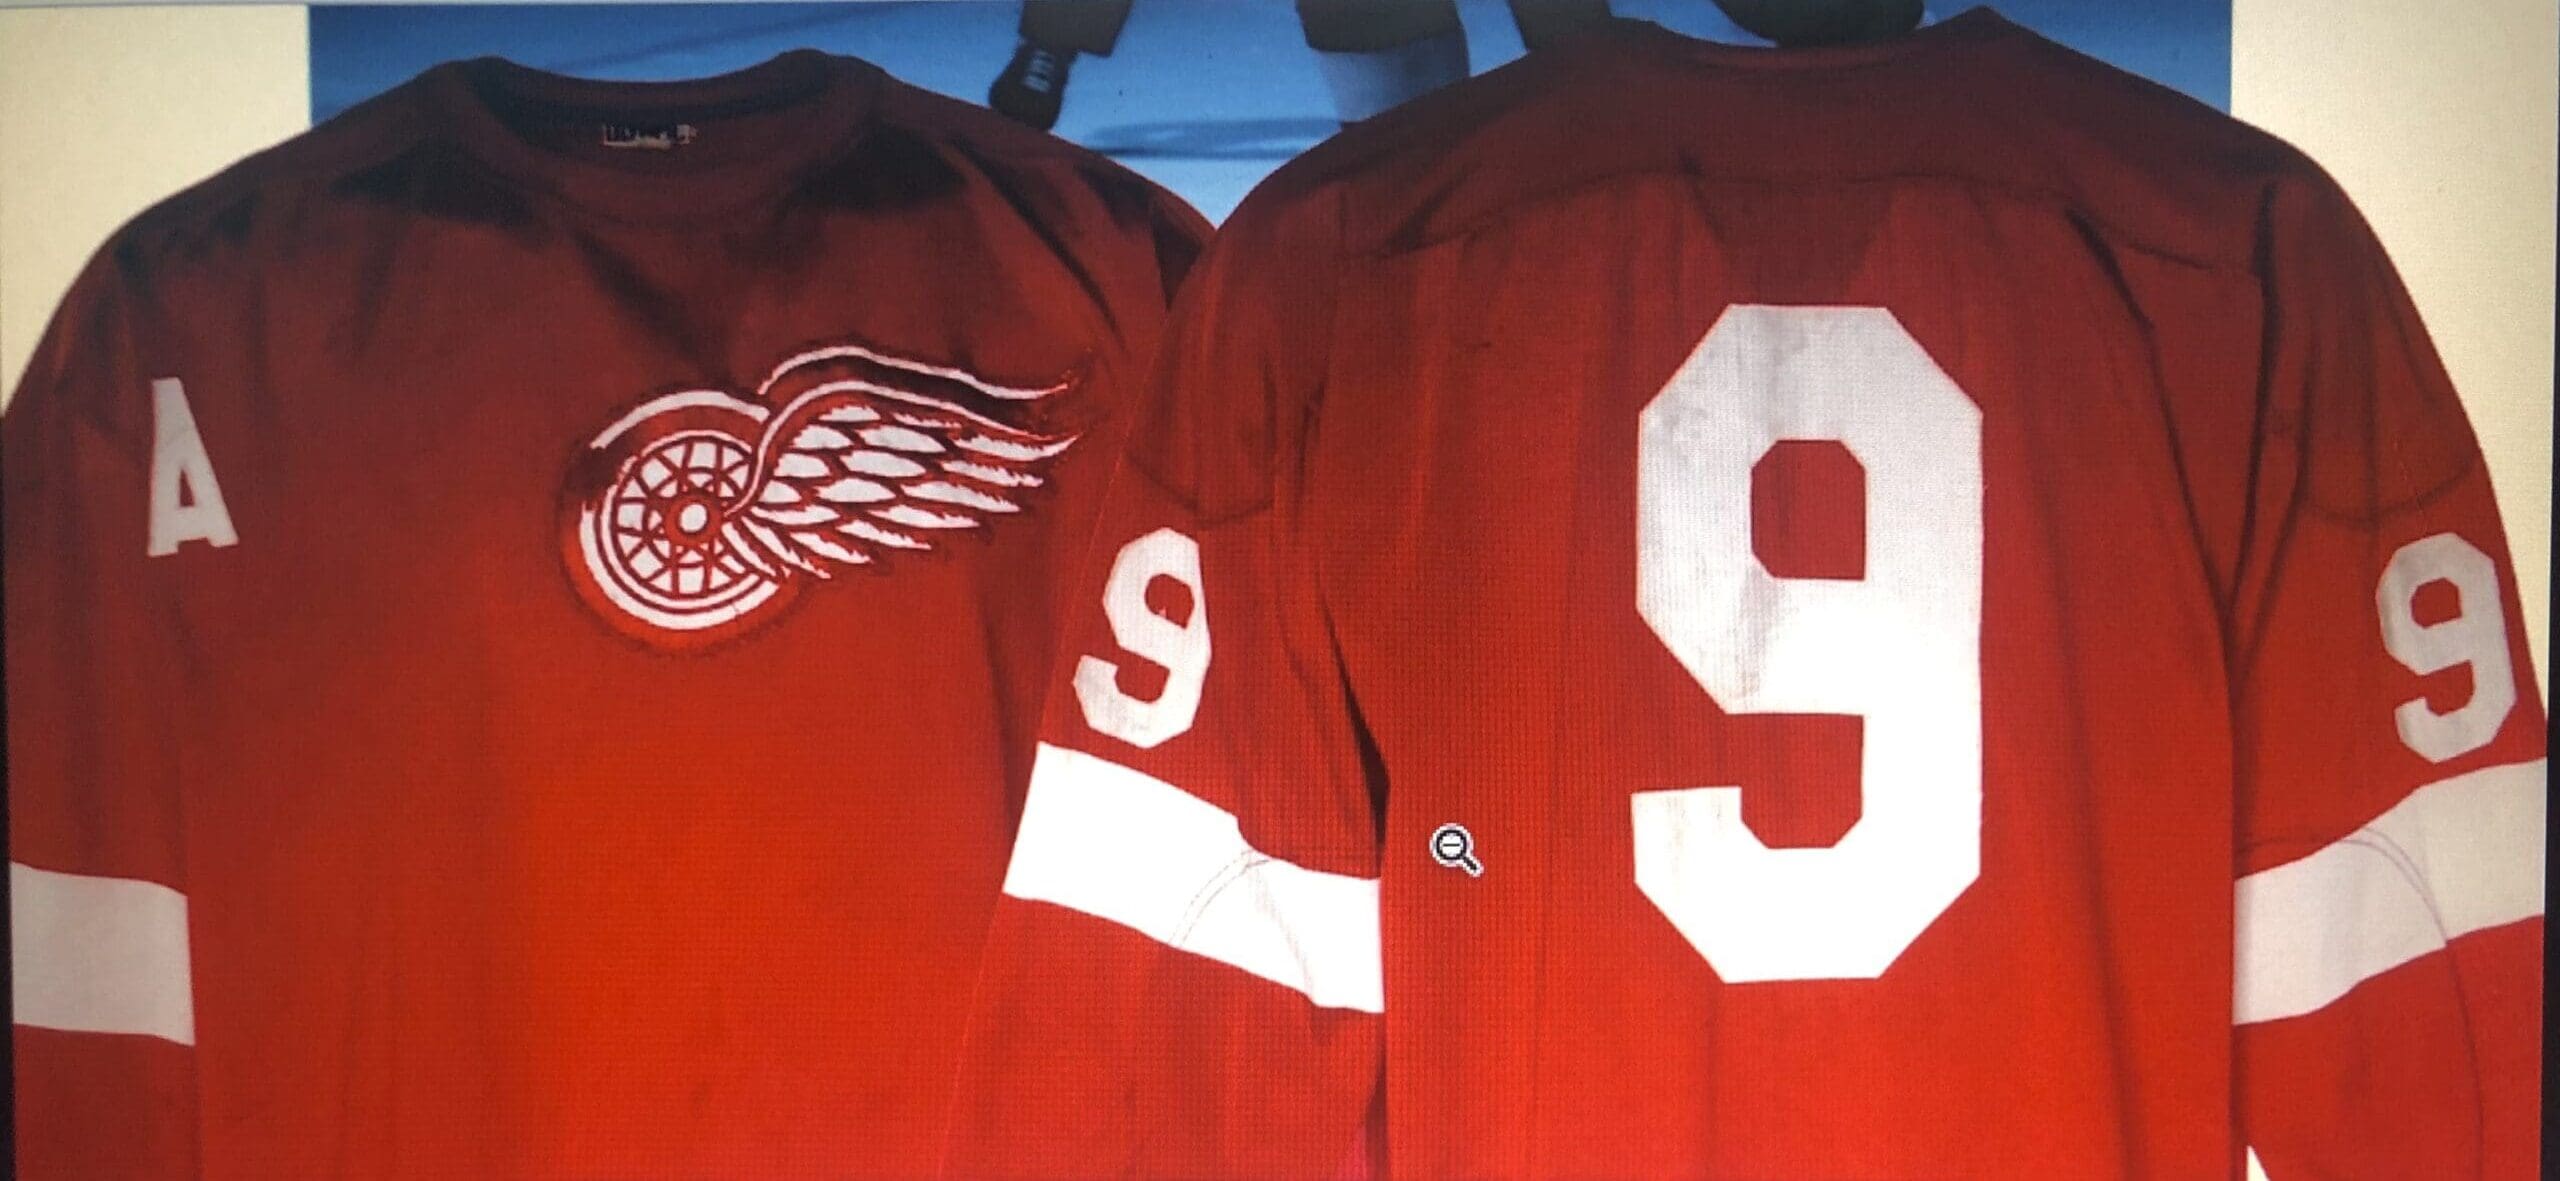 Gordie Howe Red Wings jersey